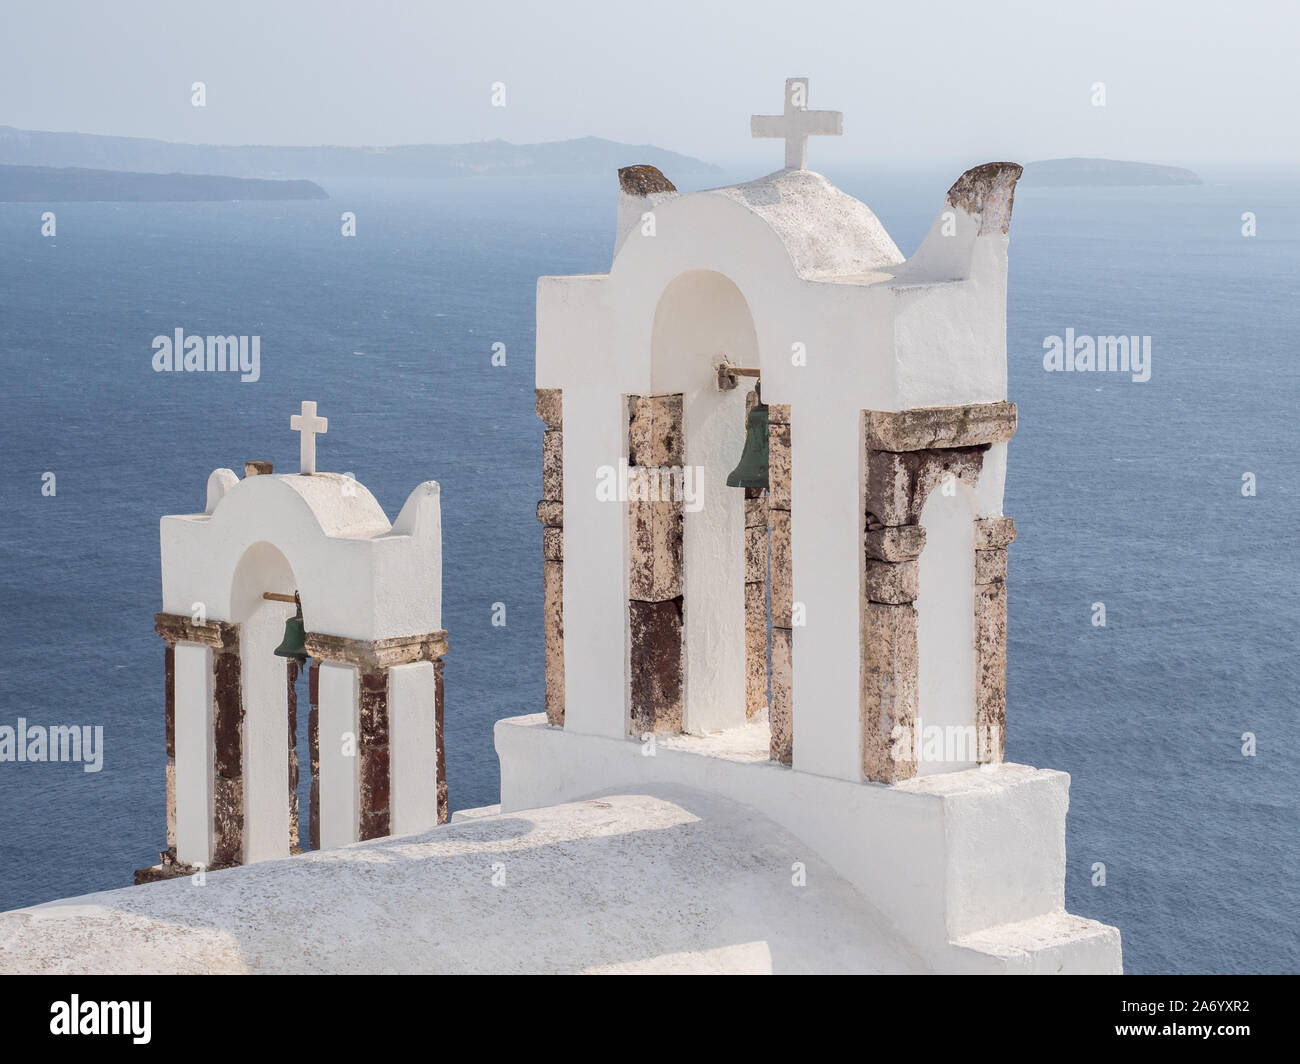 Un par de color blanco lavado dos torres con campanario cruz crucifijo cruza el mar Mediterráneo y las montañas de fondo agua horizonte Oia Santorini Foto de stock